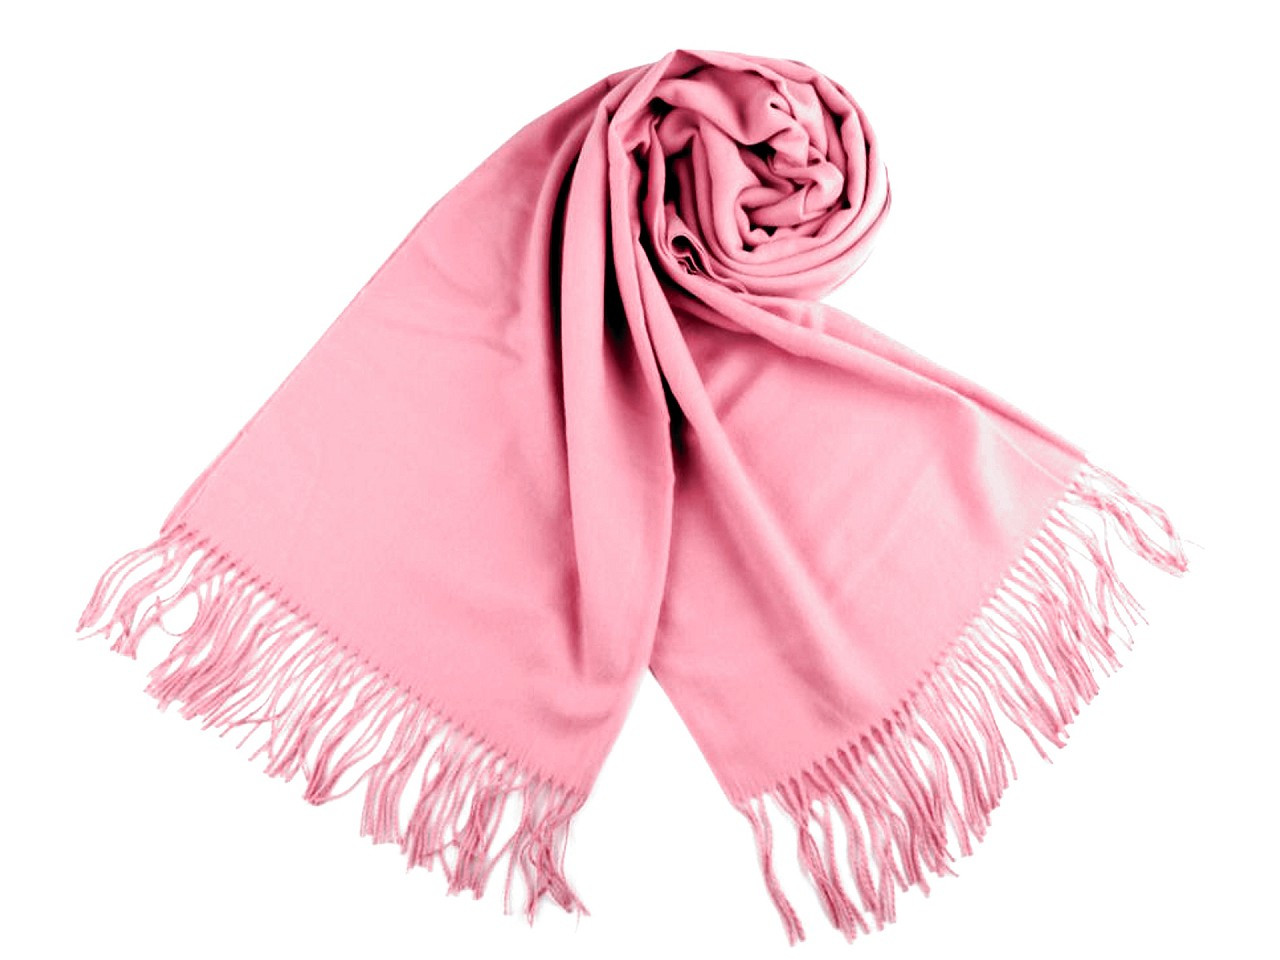 Šátek / šála typu pashmina s třásněmi 65x180 cm, barva 26 (17) růžová sv.